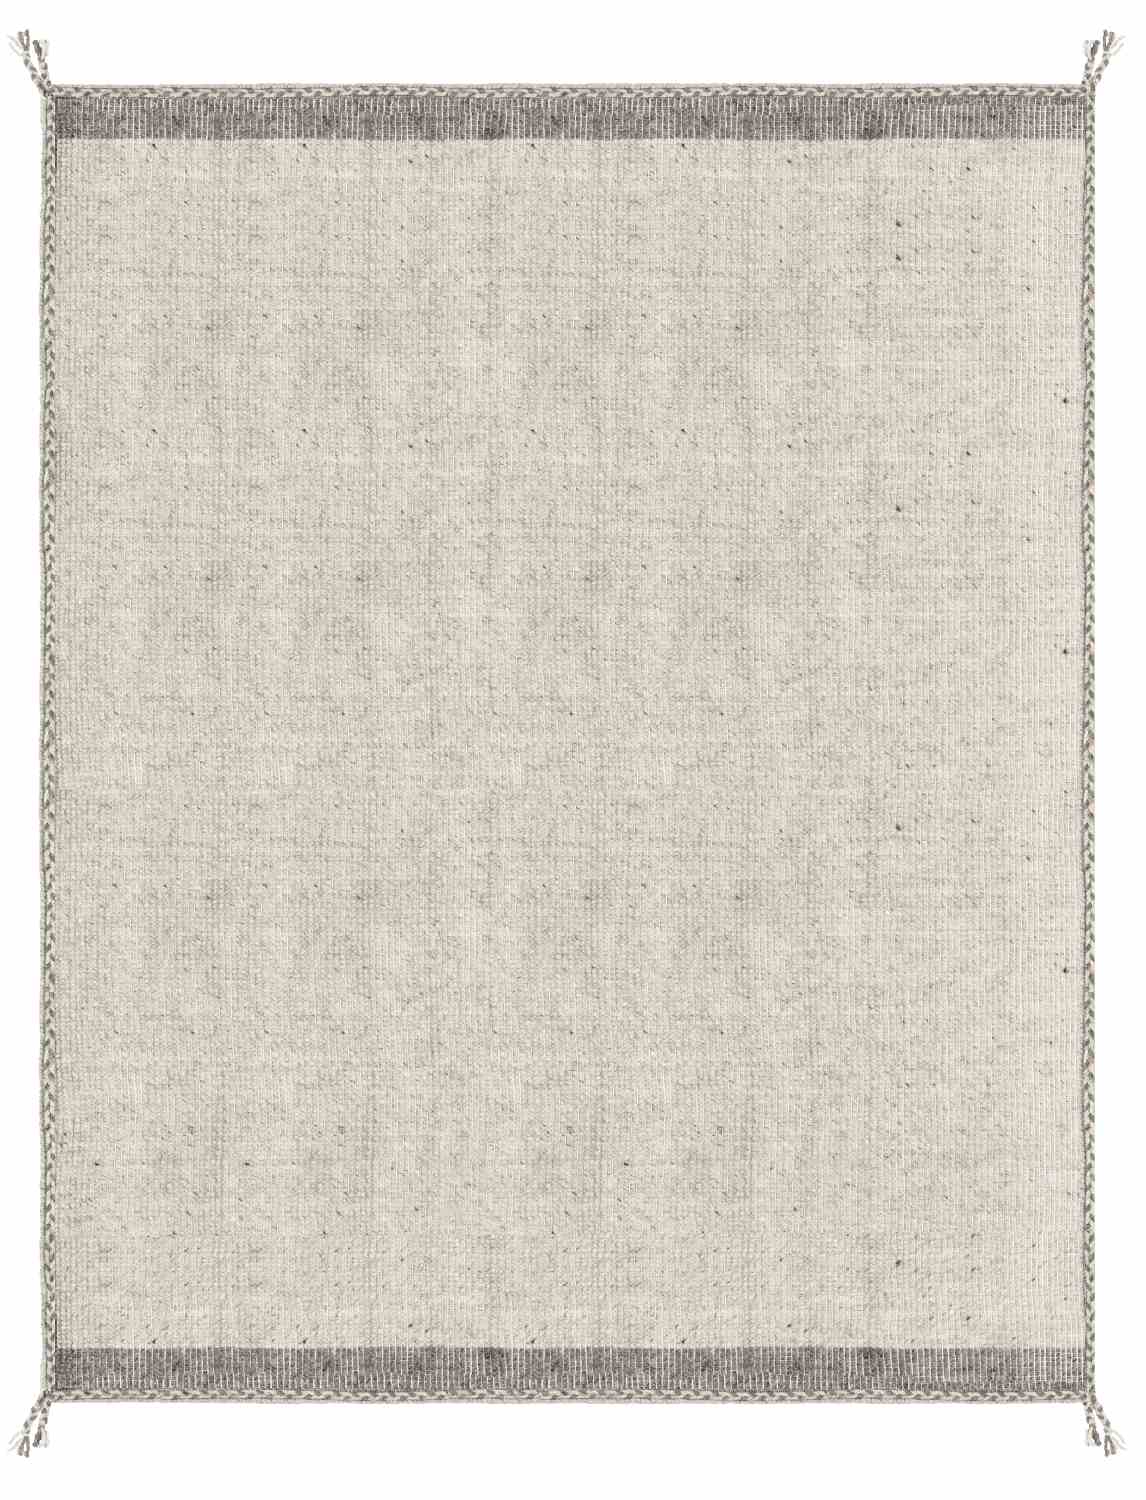 Der Teppich Chathu überzeugt mit seinem modernen Design. Gefertigt wurde die Vorderseite aus Wolle und die Rückseite aus Baumwolle. Der Teppich besitzt eine Beigen Farbton und die Maße von 200x300 cm.